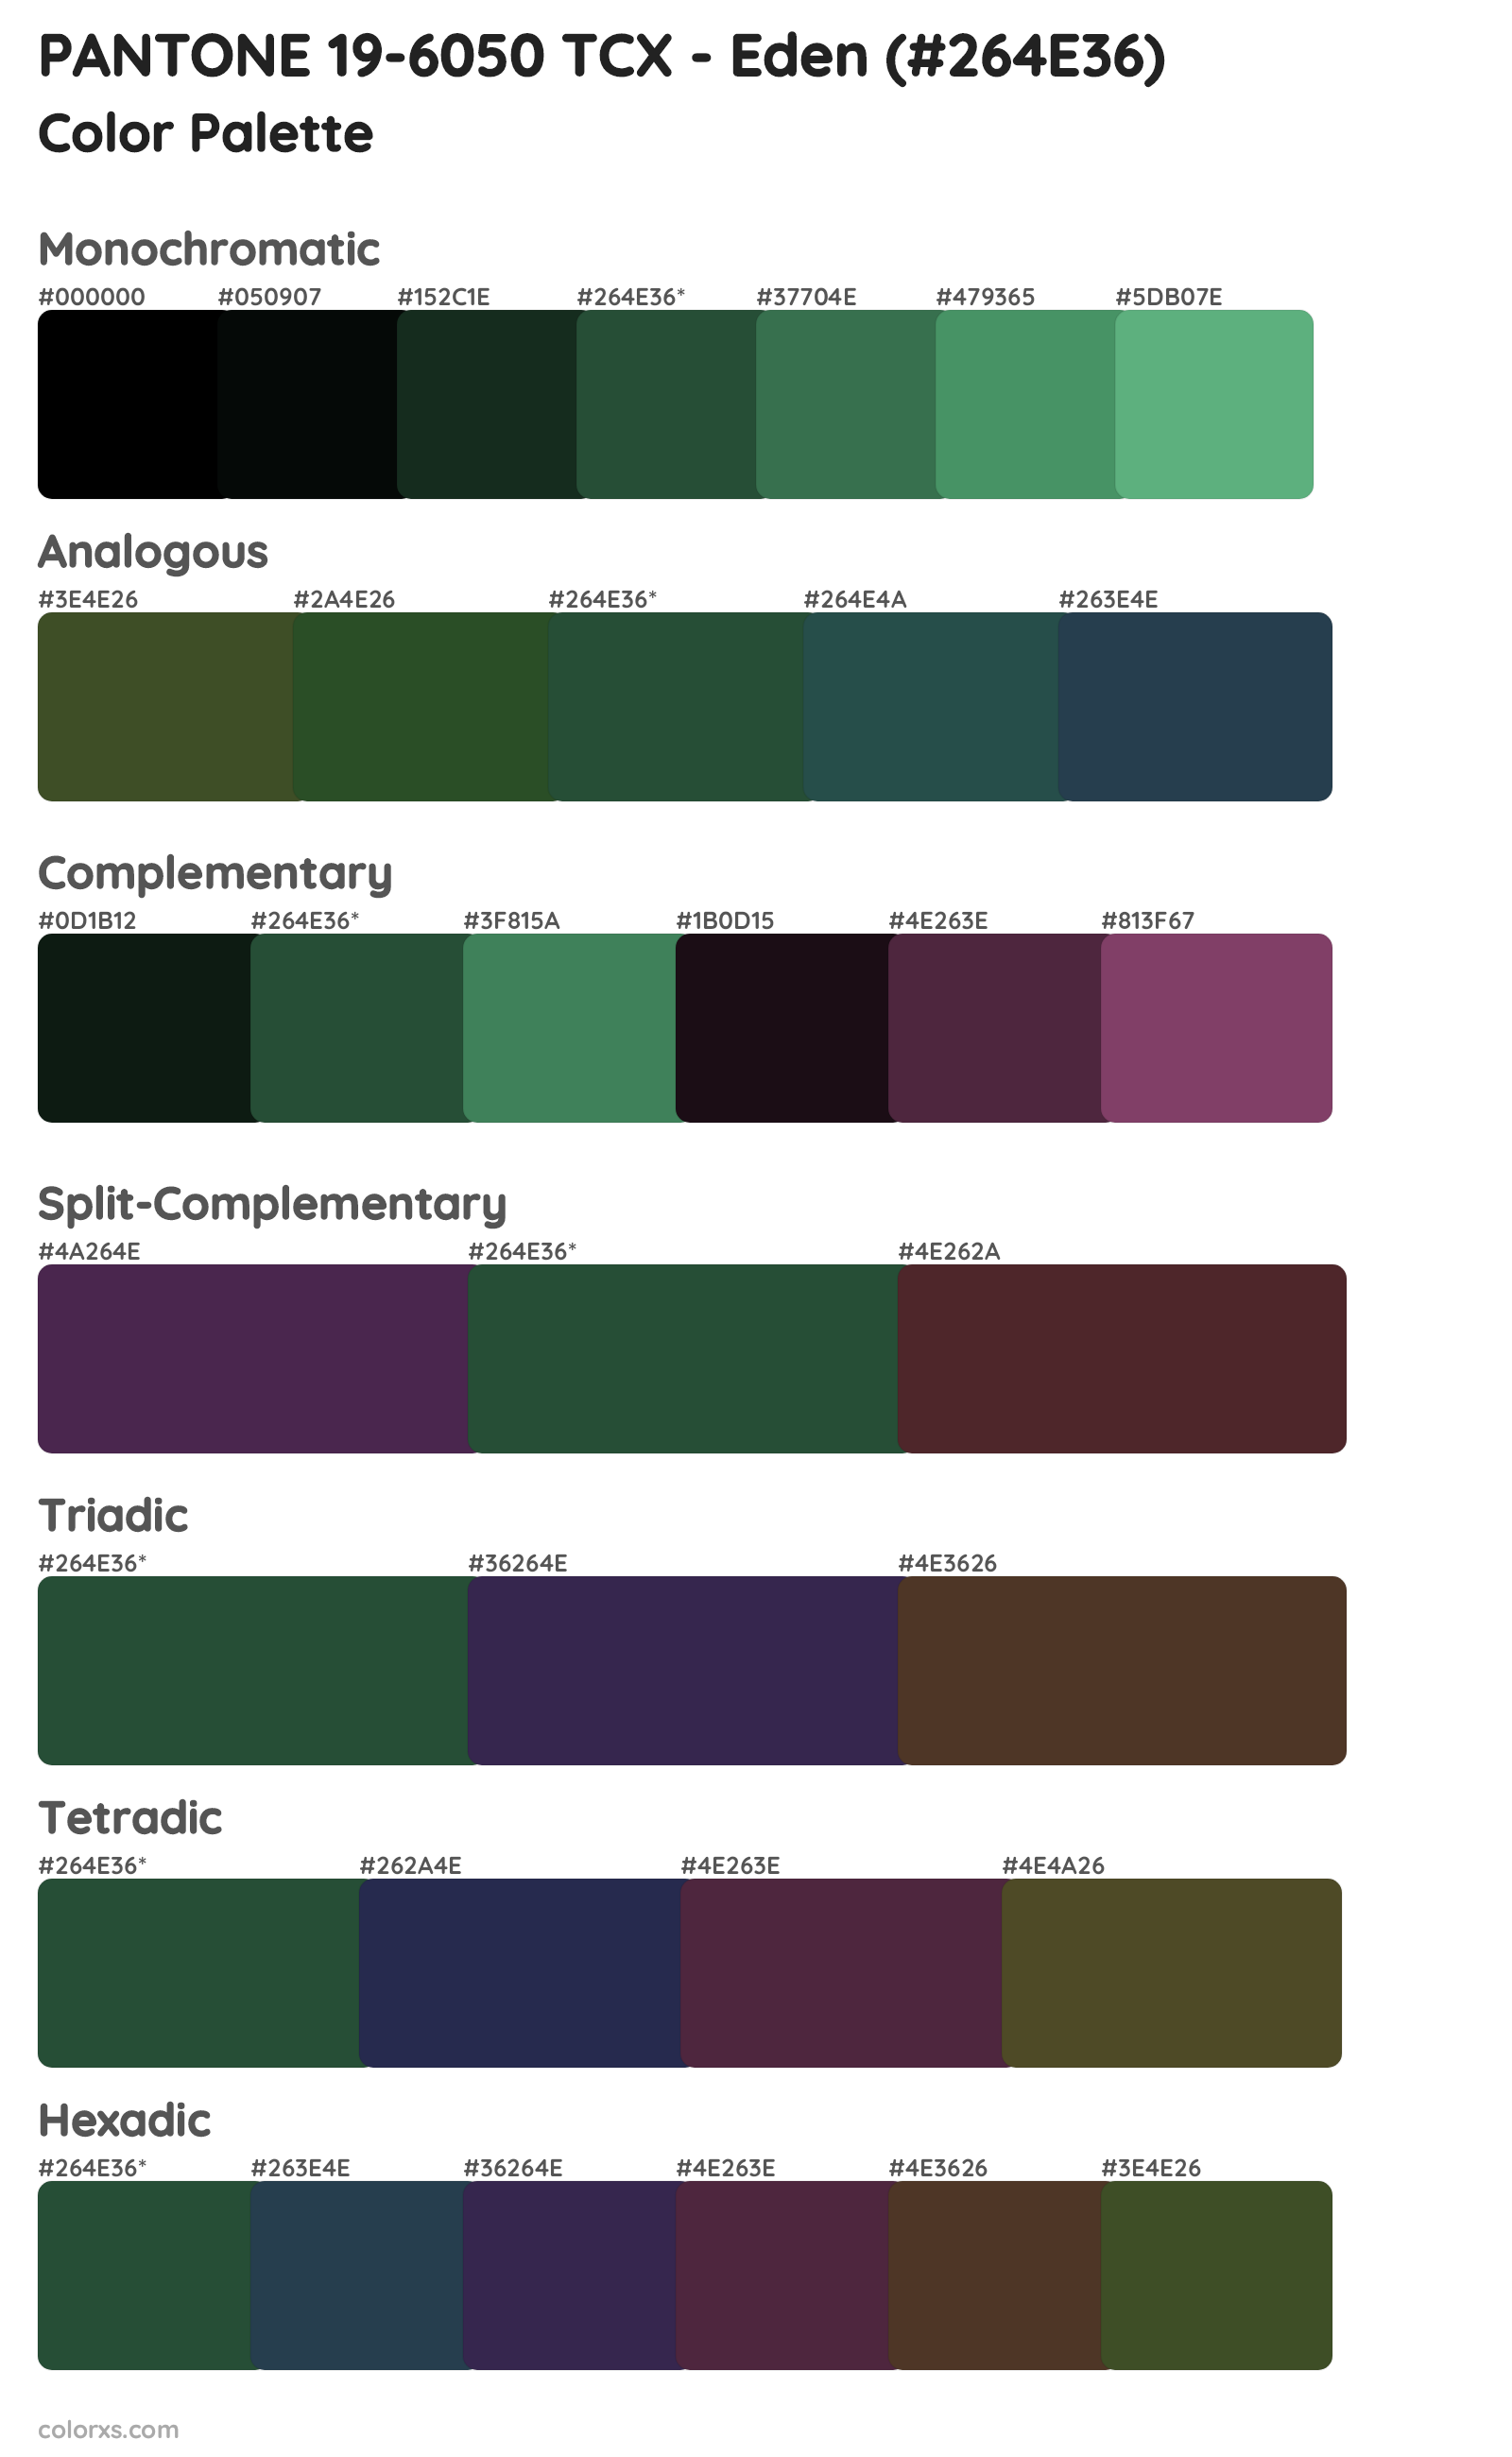 PANTONE 19-6050 TCX - Eden Color Scheme Palettes